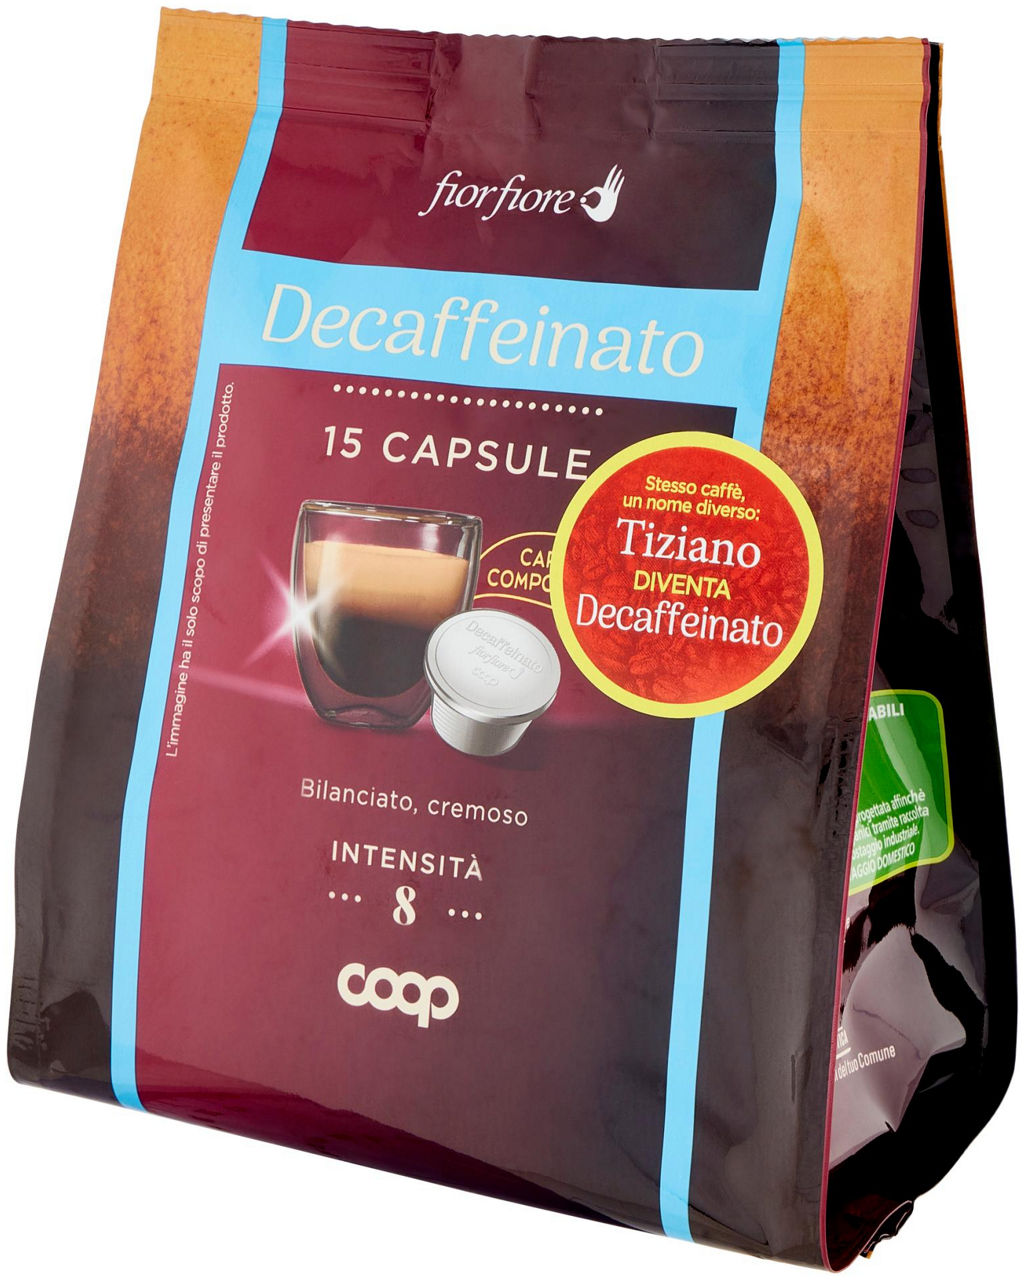 CAFFE' DECAFFEINATO IN CAPSULE COMPOSTABIL "TIZIANO" FIOR FIORE COOP PZ 15 G 95 - 6